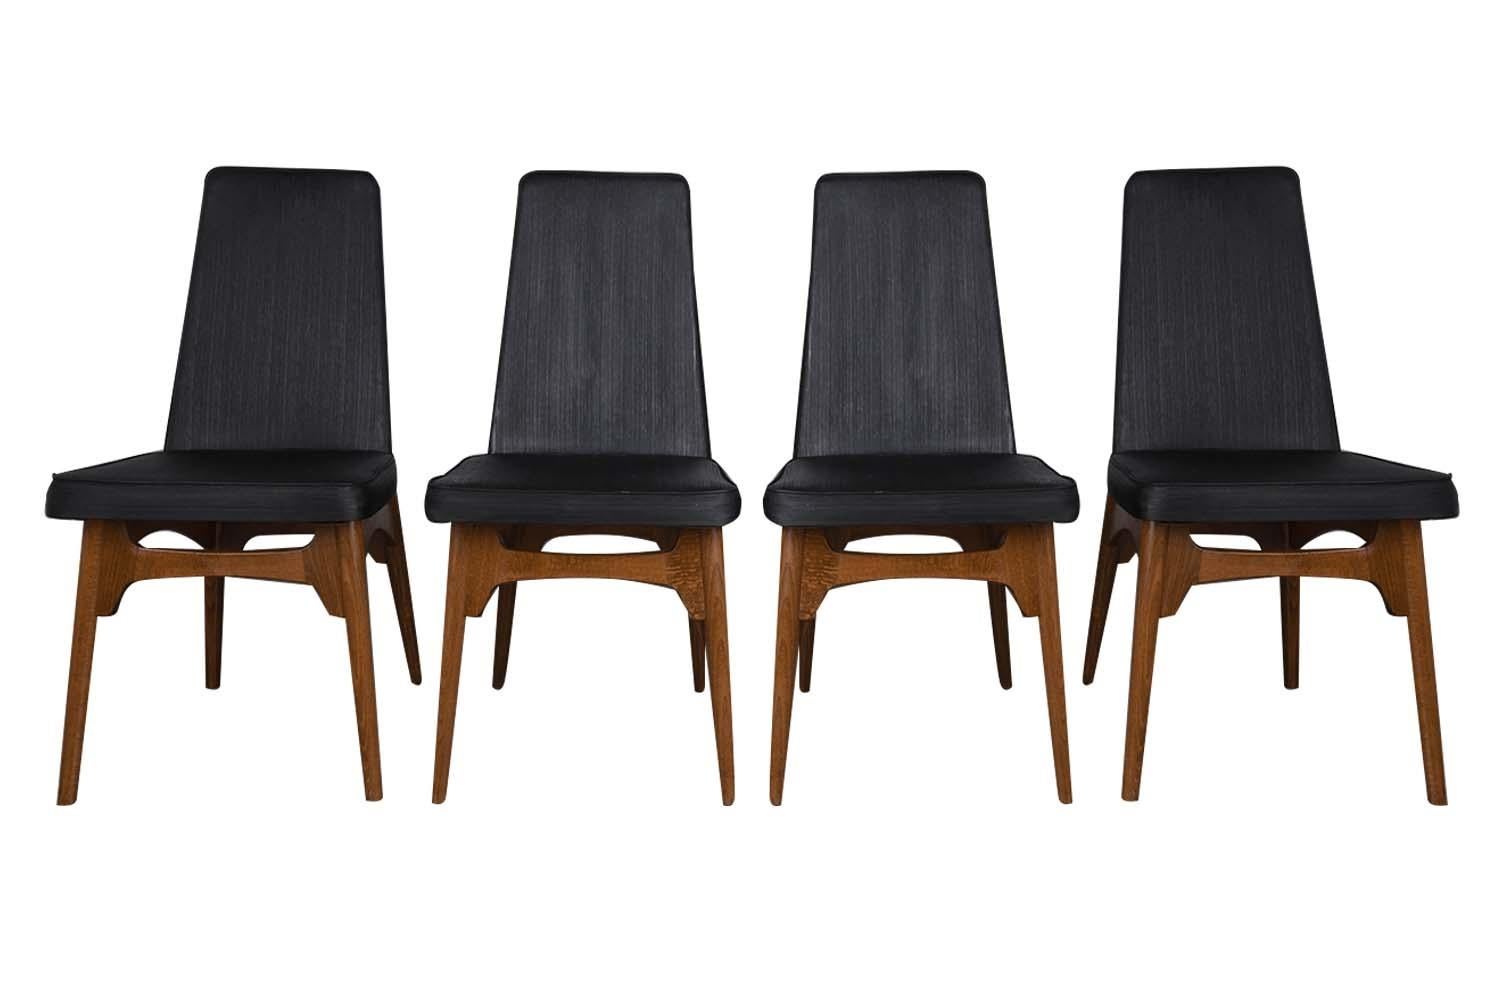 Un ensemble exceptionnel de quatre chaises de salle à manger de style Adrian Pearsall, datant du milieu du siècle dernier, avec des cadres en noyer et un revêtement noir, vers les années 1960. L'esthétique organique et fonctionnelle est mise en